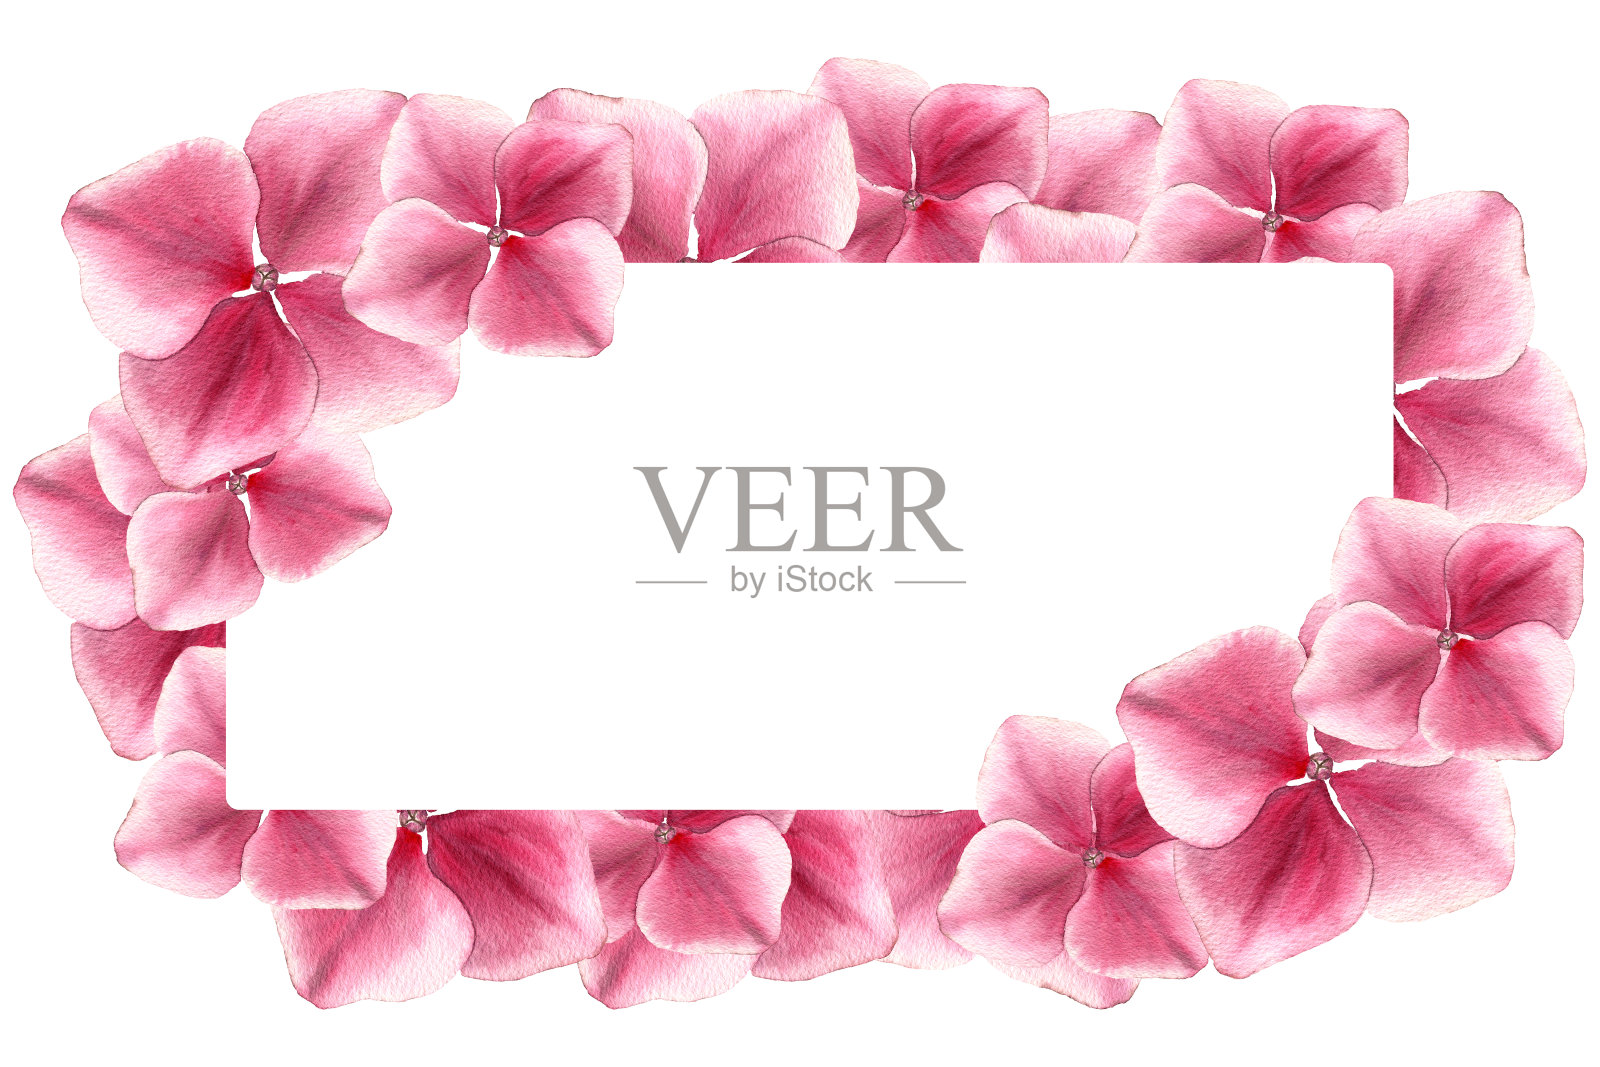 粉红色的绣球节日边框，优雅的水彩插画母亲节纪念日，粉红色的花卉装饰与复制空间插画图片素材